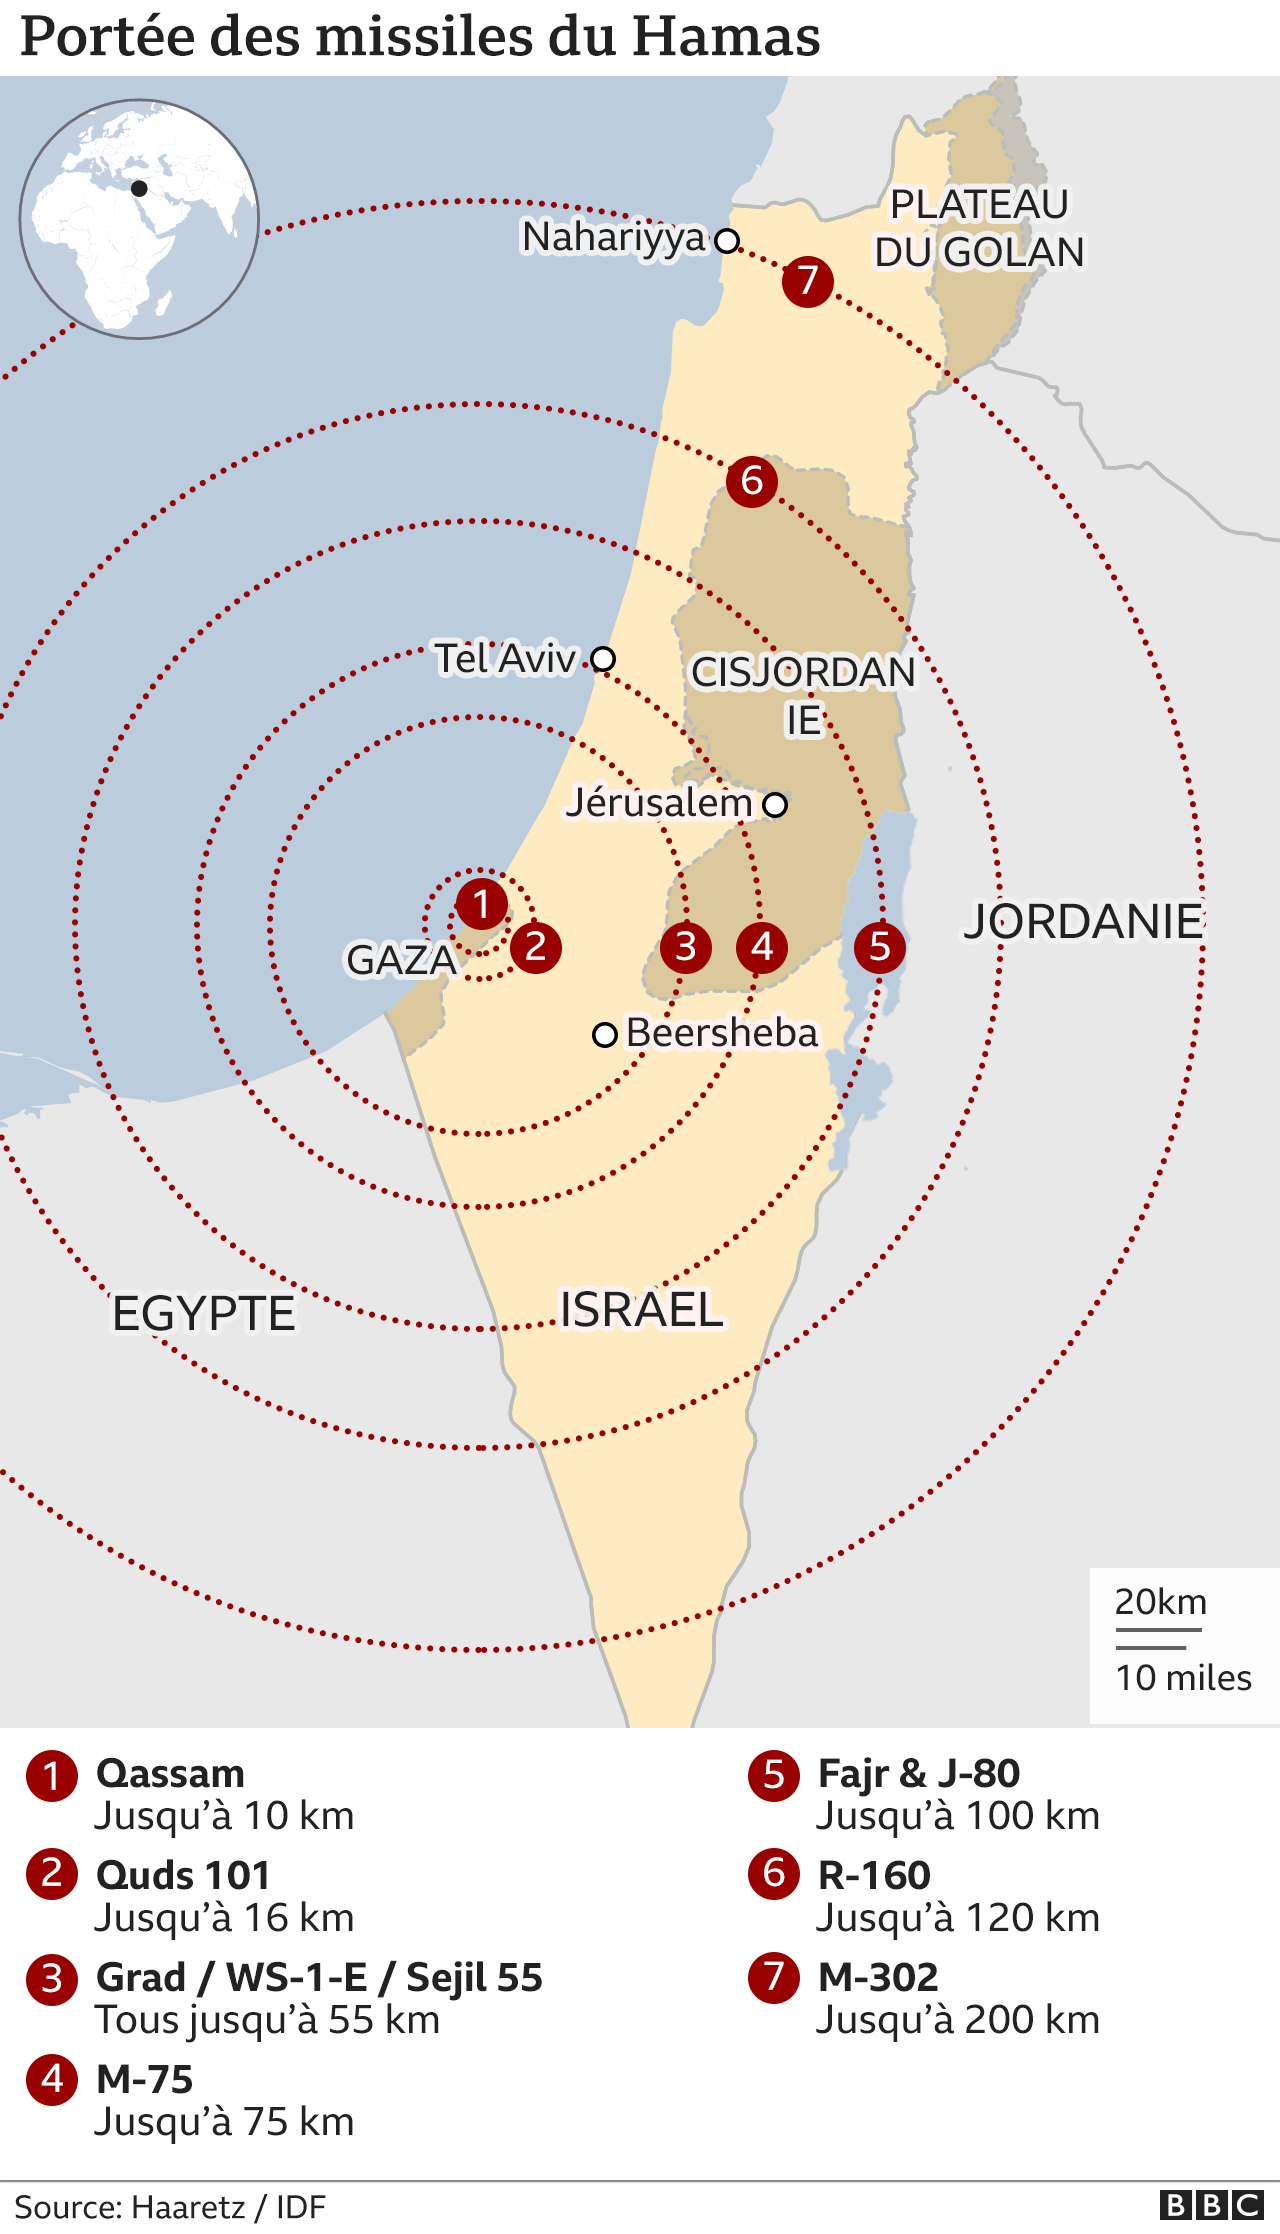 Carte indiquant la portée des missiles du Hamas